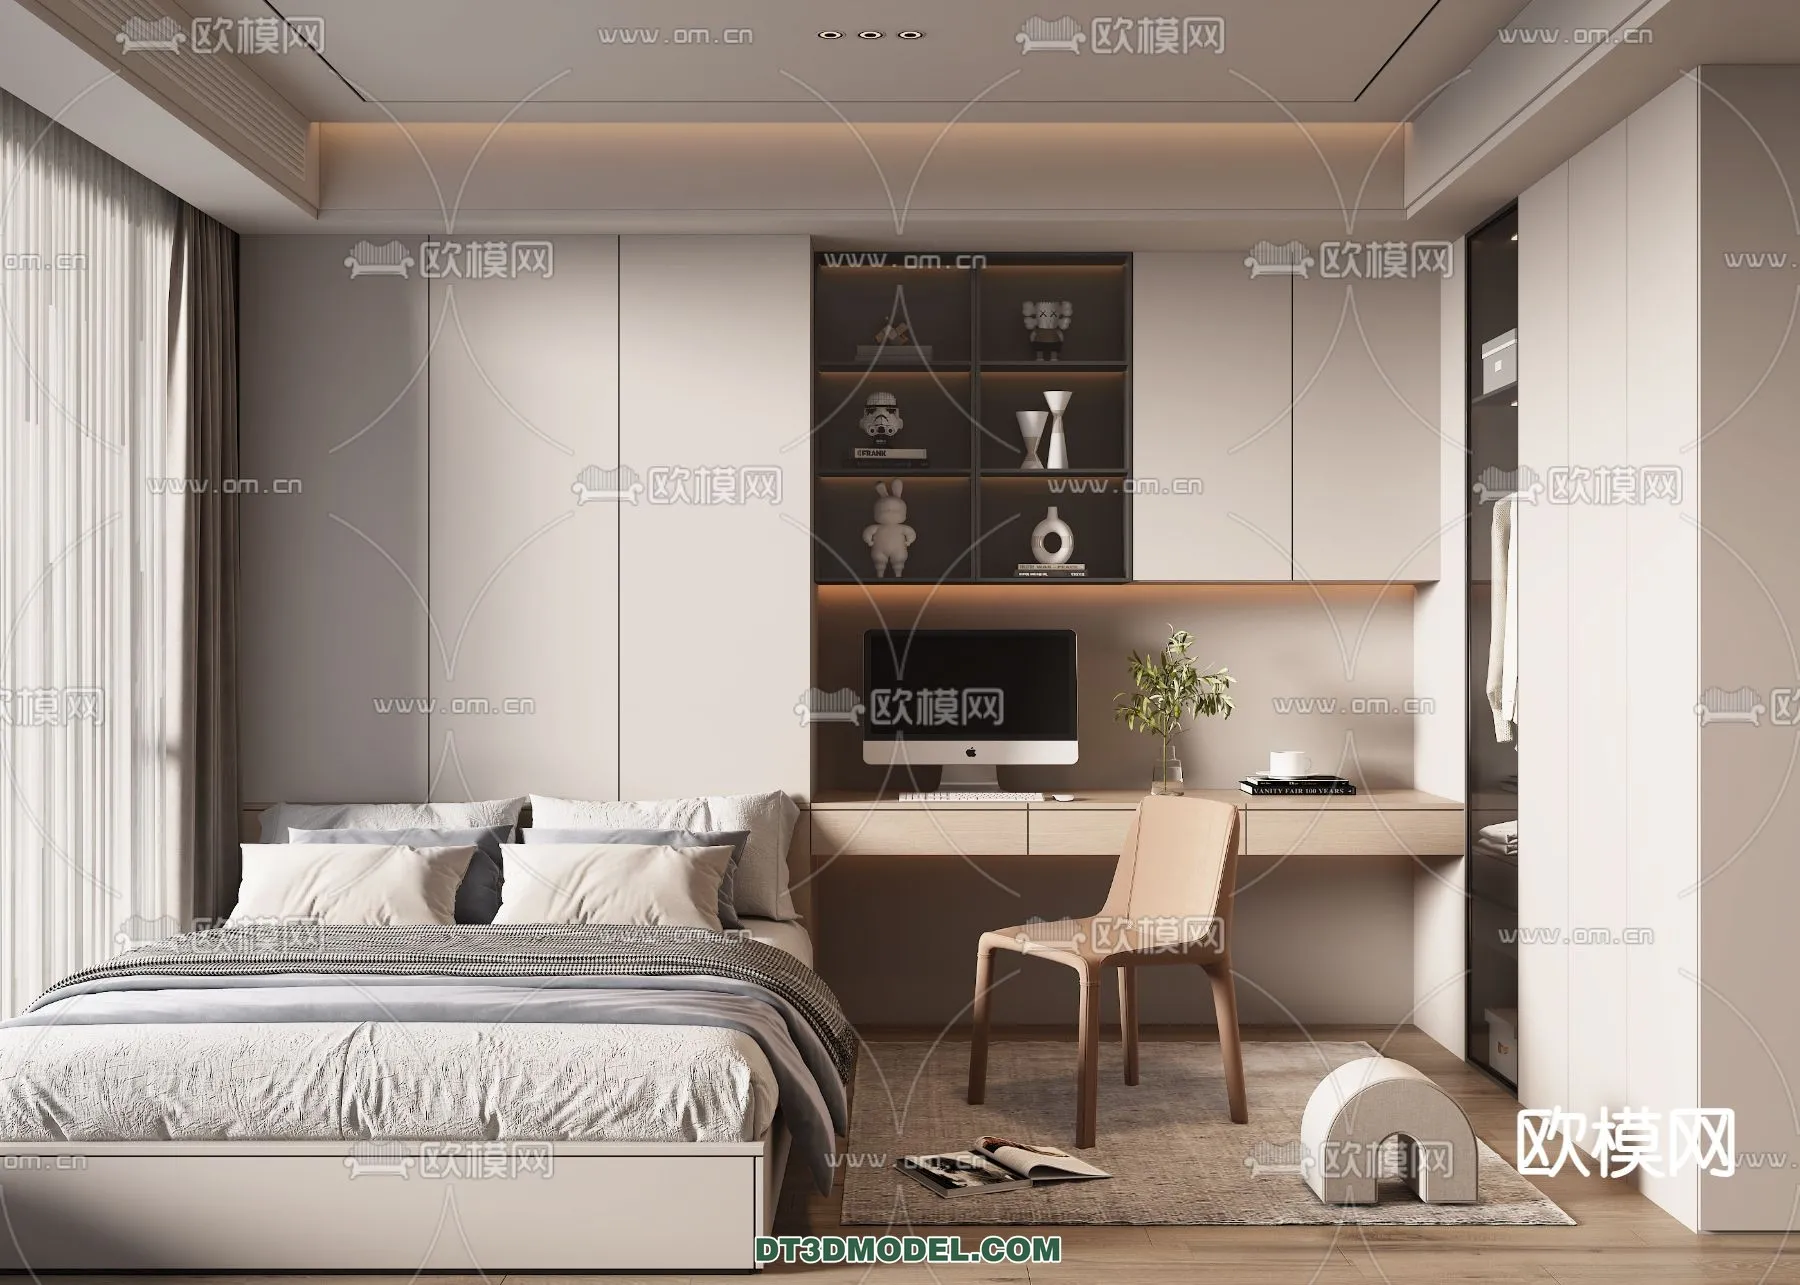 Tatami Bedroom – Japan Bedroom – 3D Scene – 071